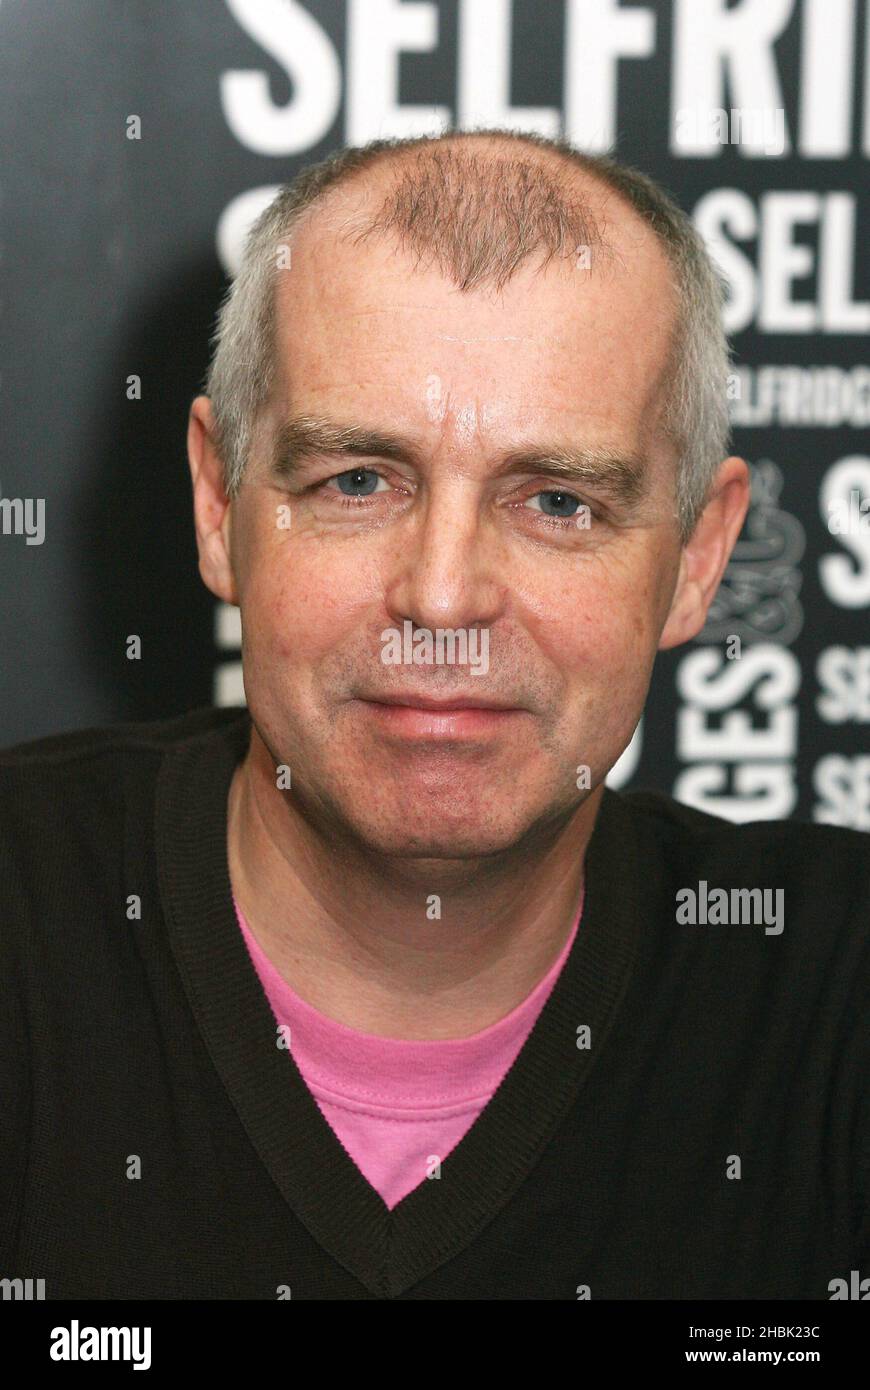 Neil Tennant von den Pet Shop Boys nimmt an einer Erstunterzeichnung Teil, um den Pet Shop Boys Catalog zu veröffentlichen, der am 14. Dezember 2006 das 20-jährige Jubiläum ihres ersten Albums im Jahr 1986 in Selfridges in London feiert. Unterhaltung Stockfoto